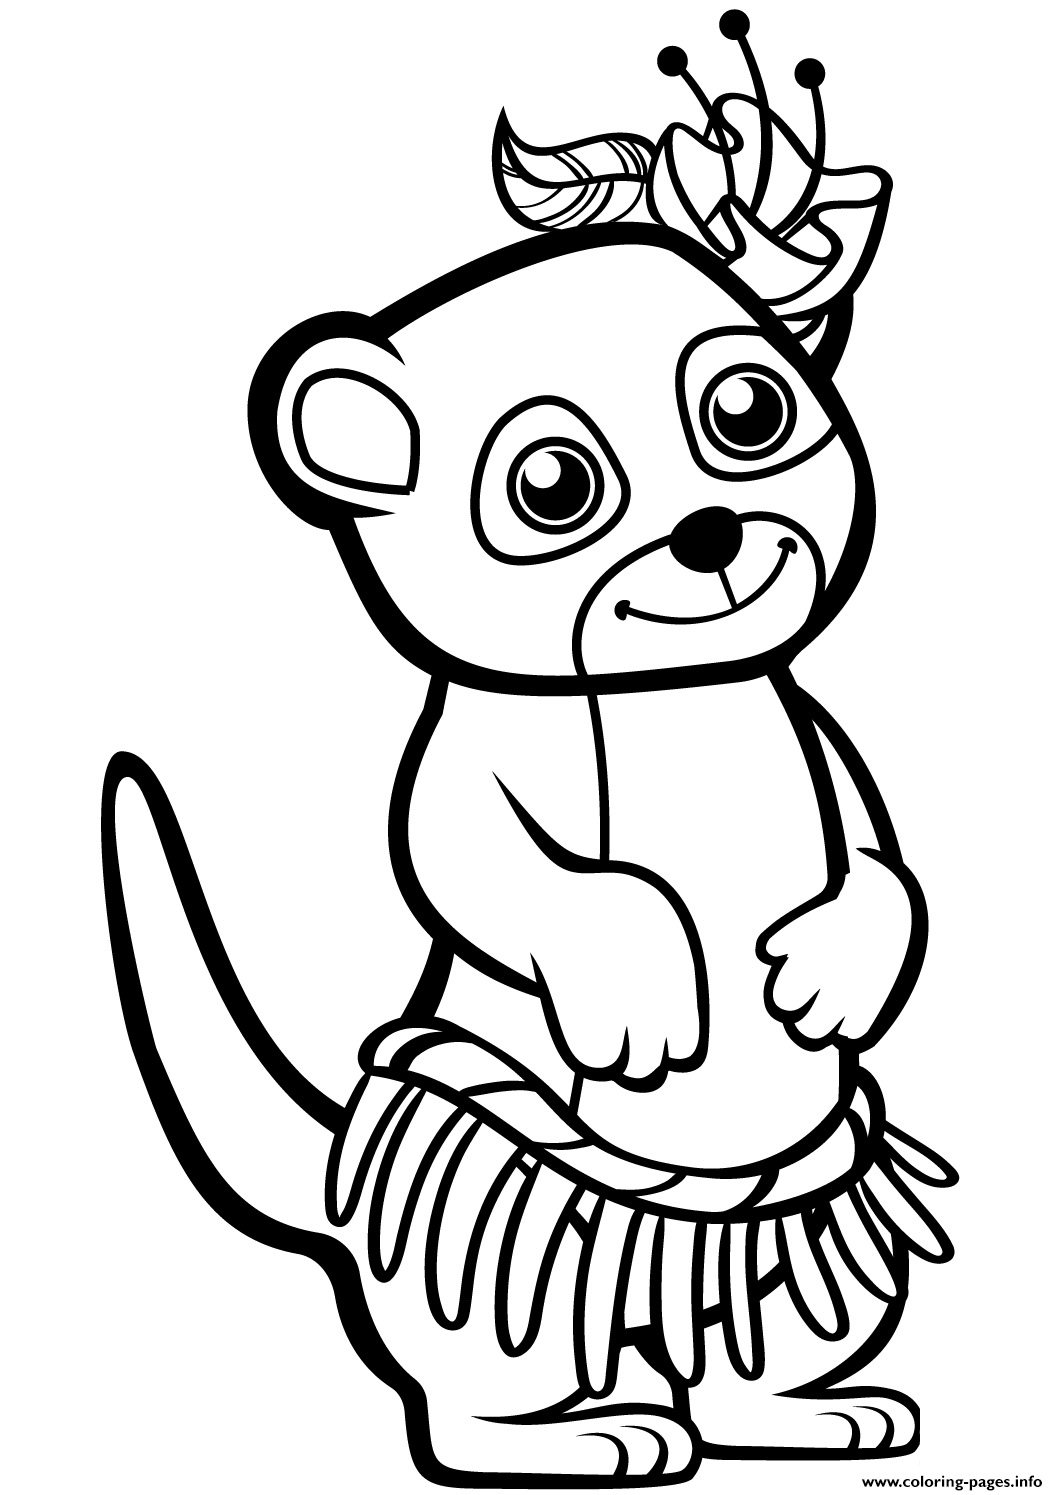 Funny Meerkat coloring